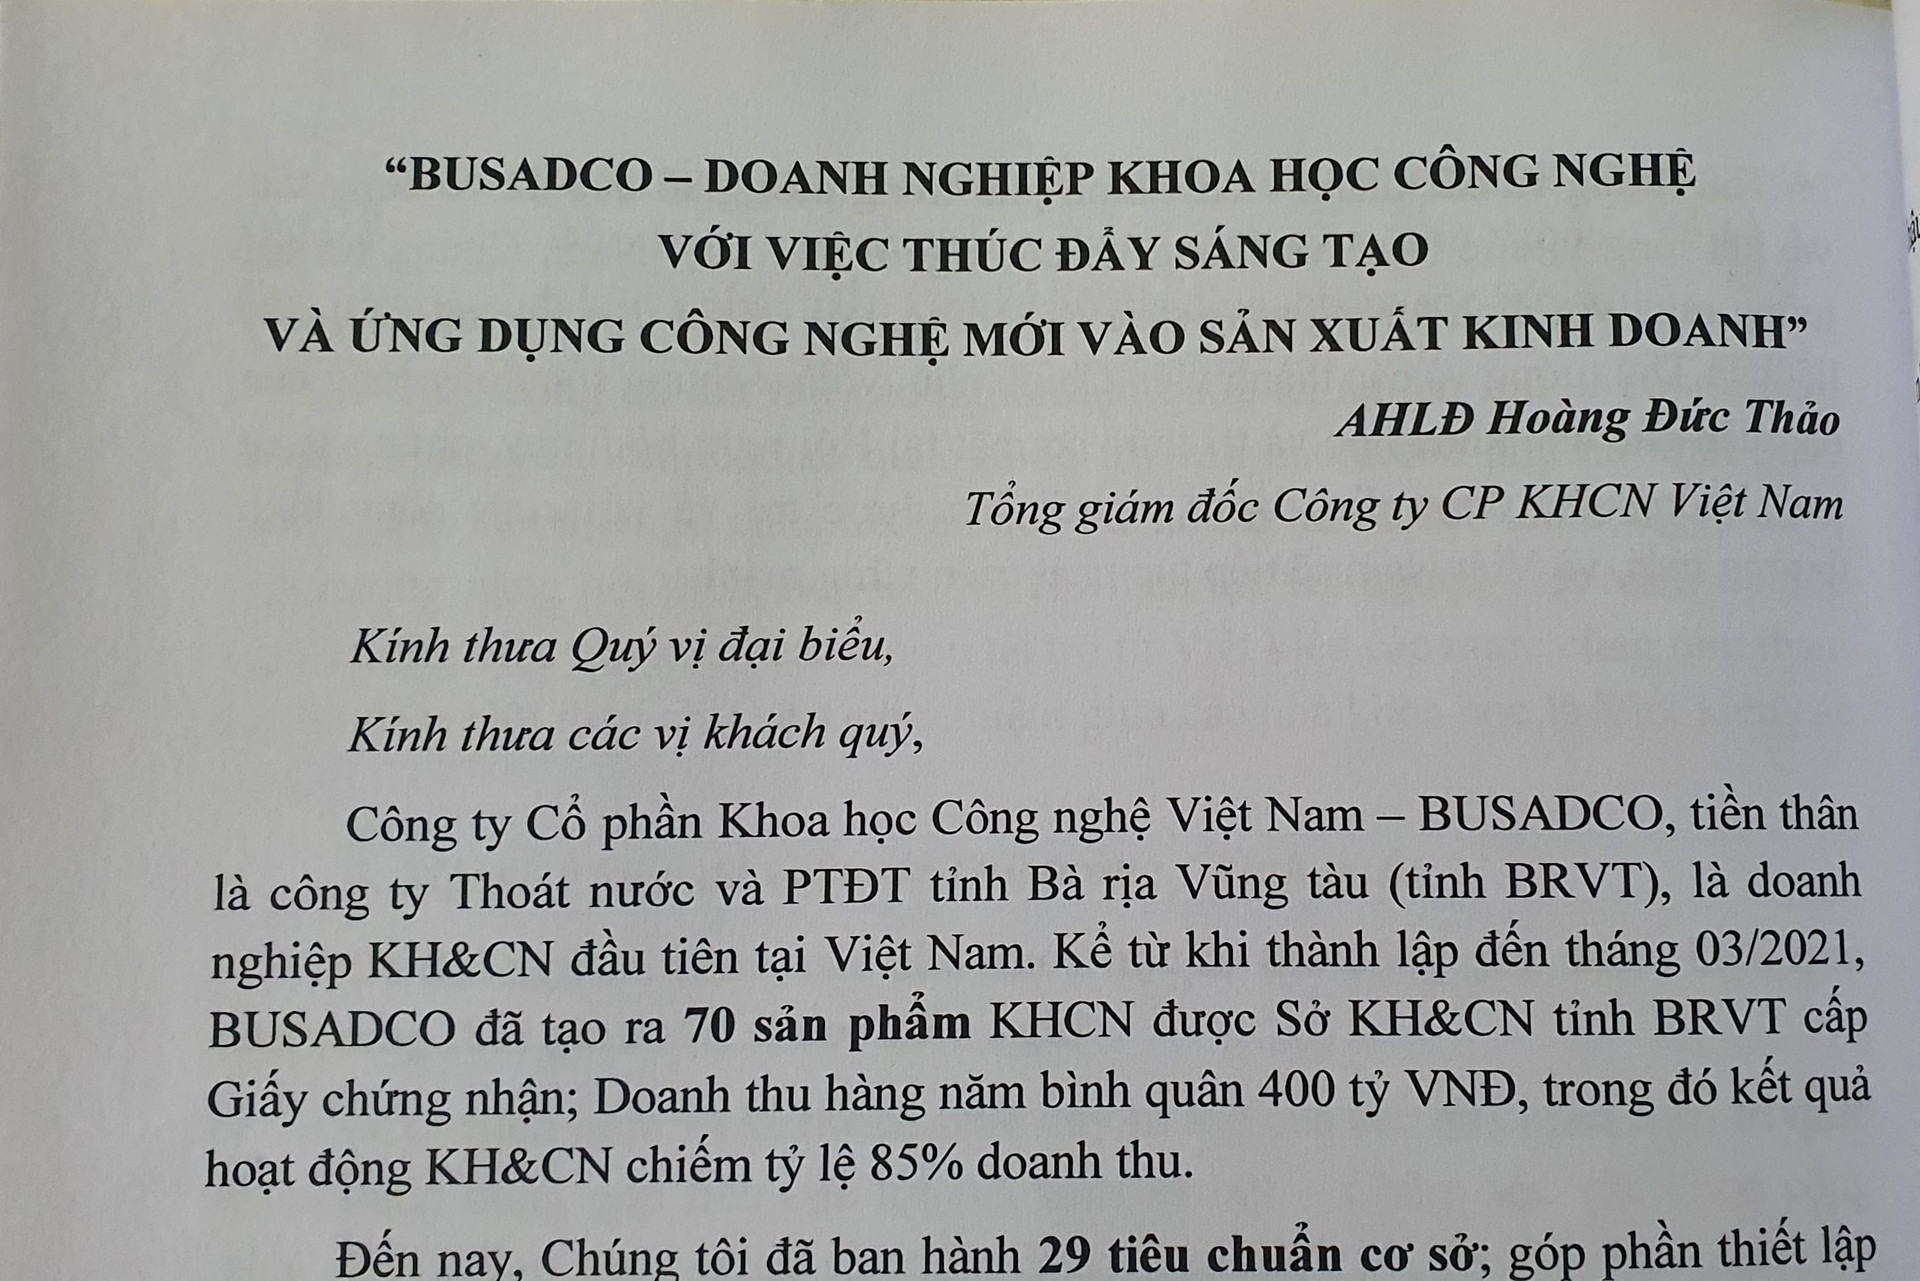 Hoang-Duc-Thao